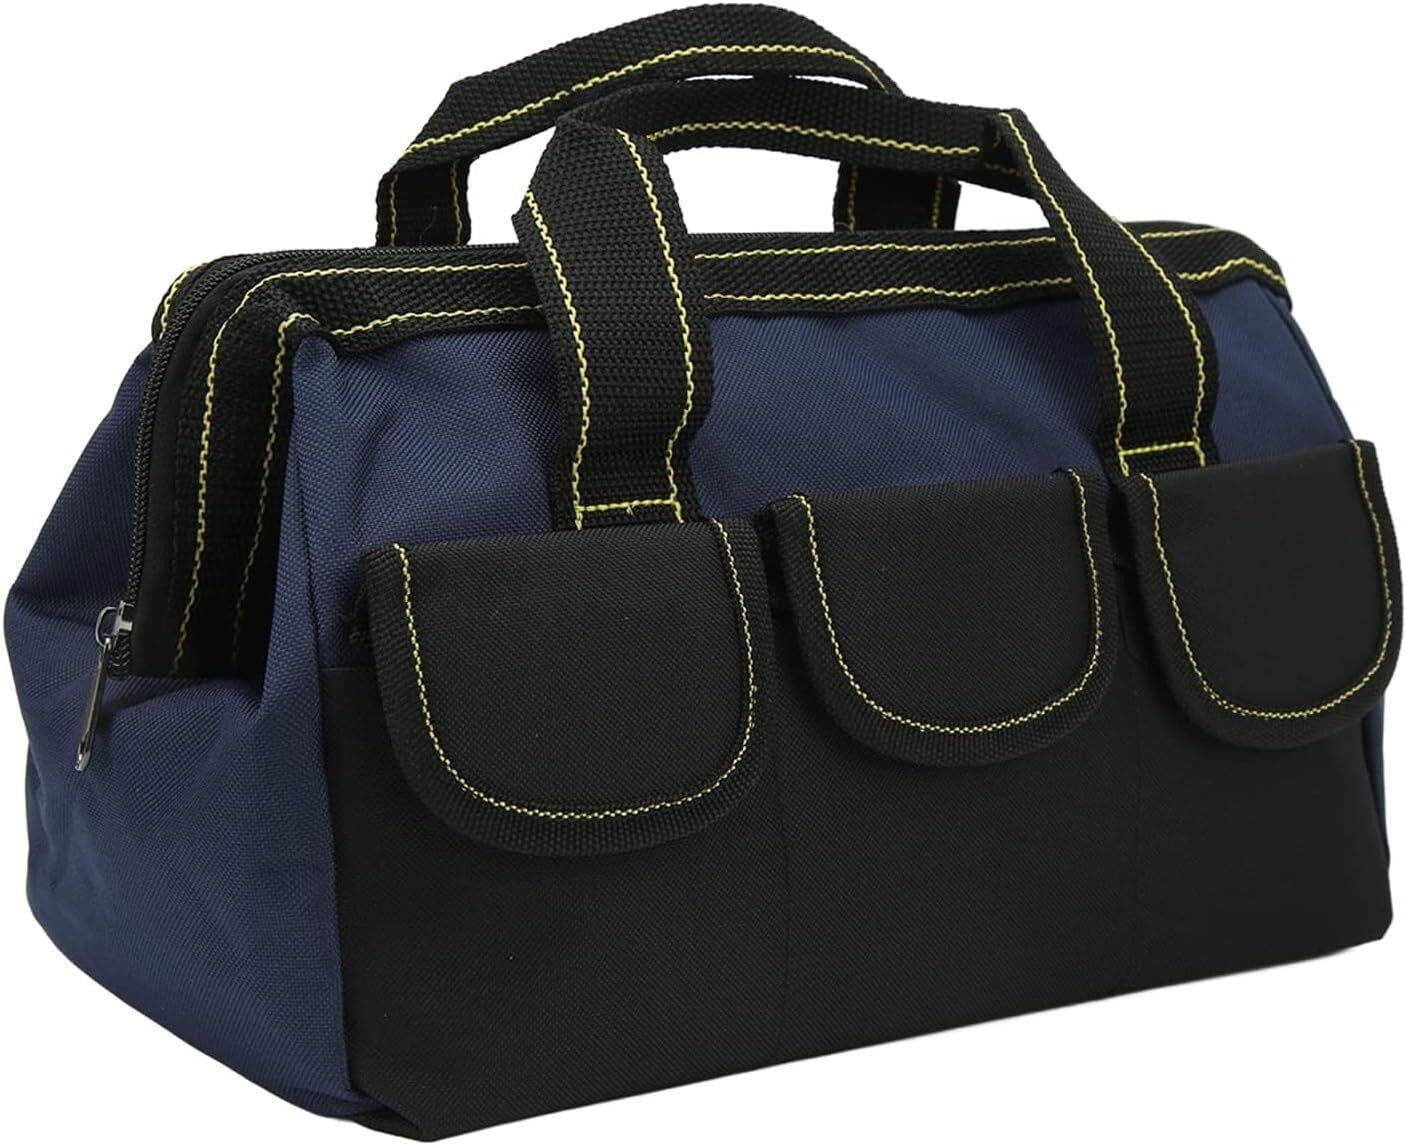 13in Waterproof Tool Storage Bag, Blue-Black